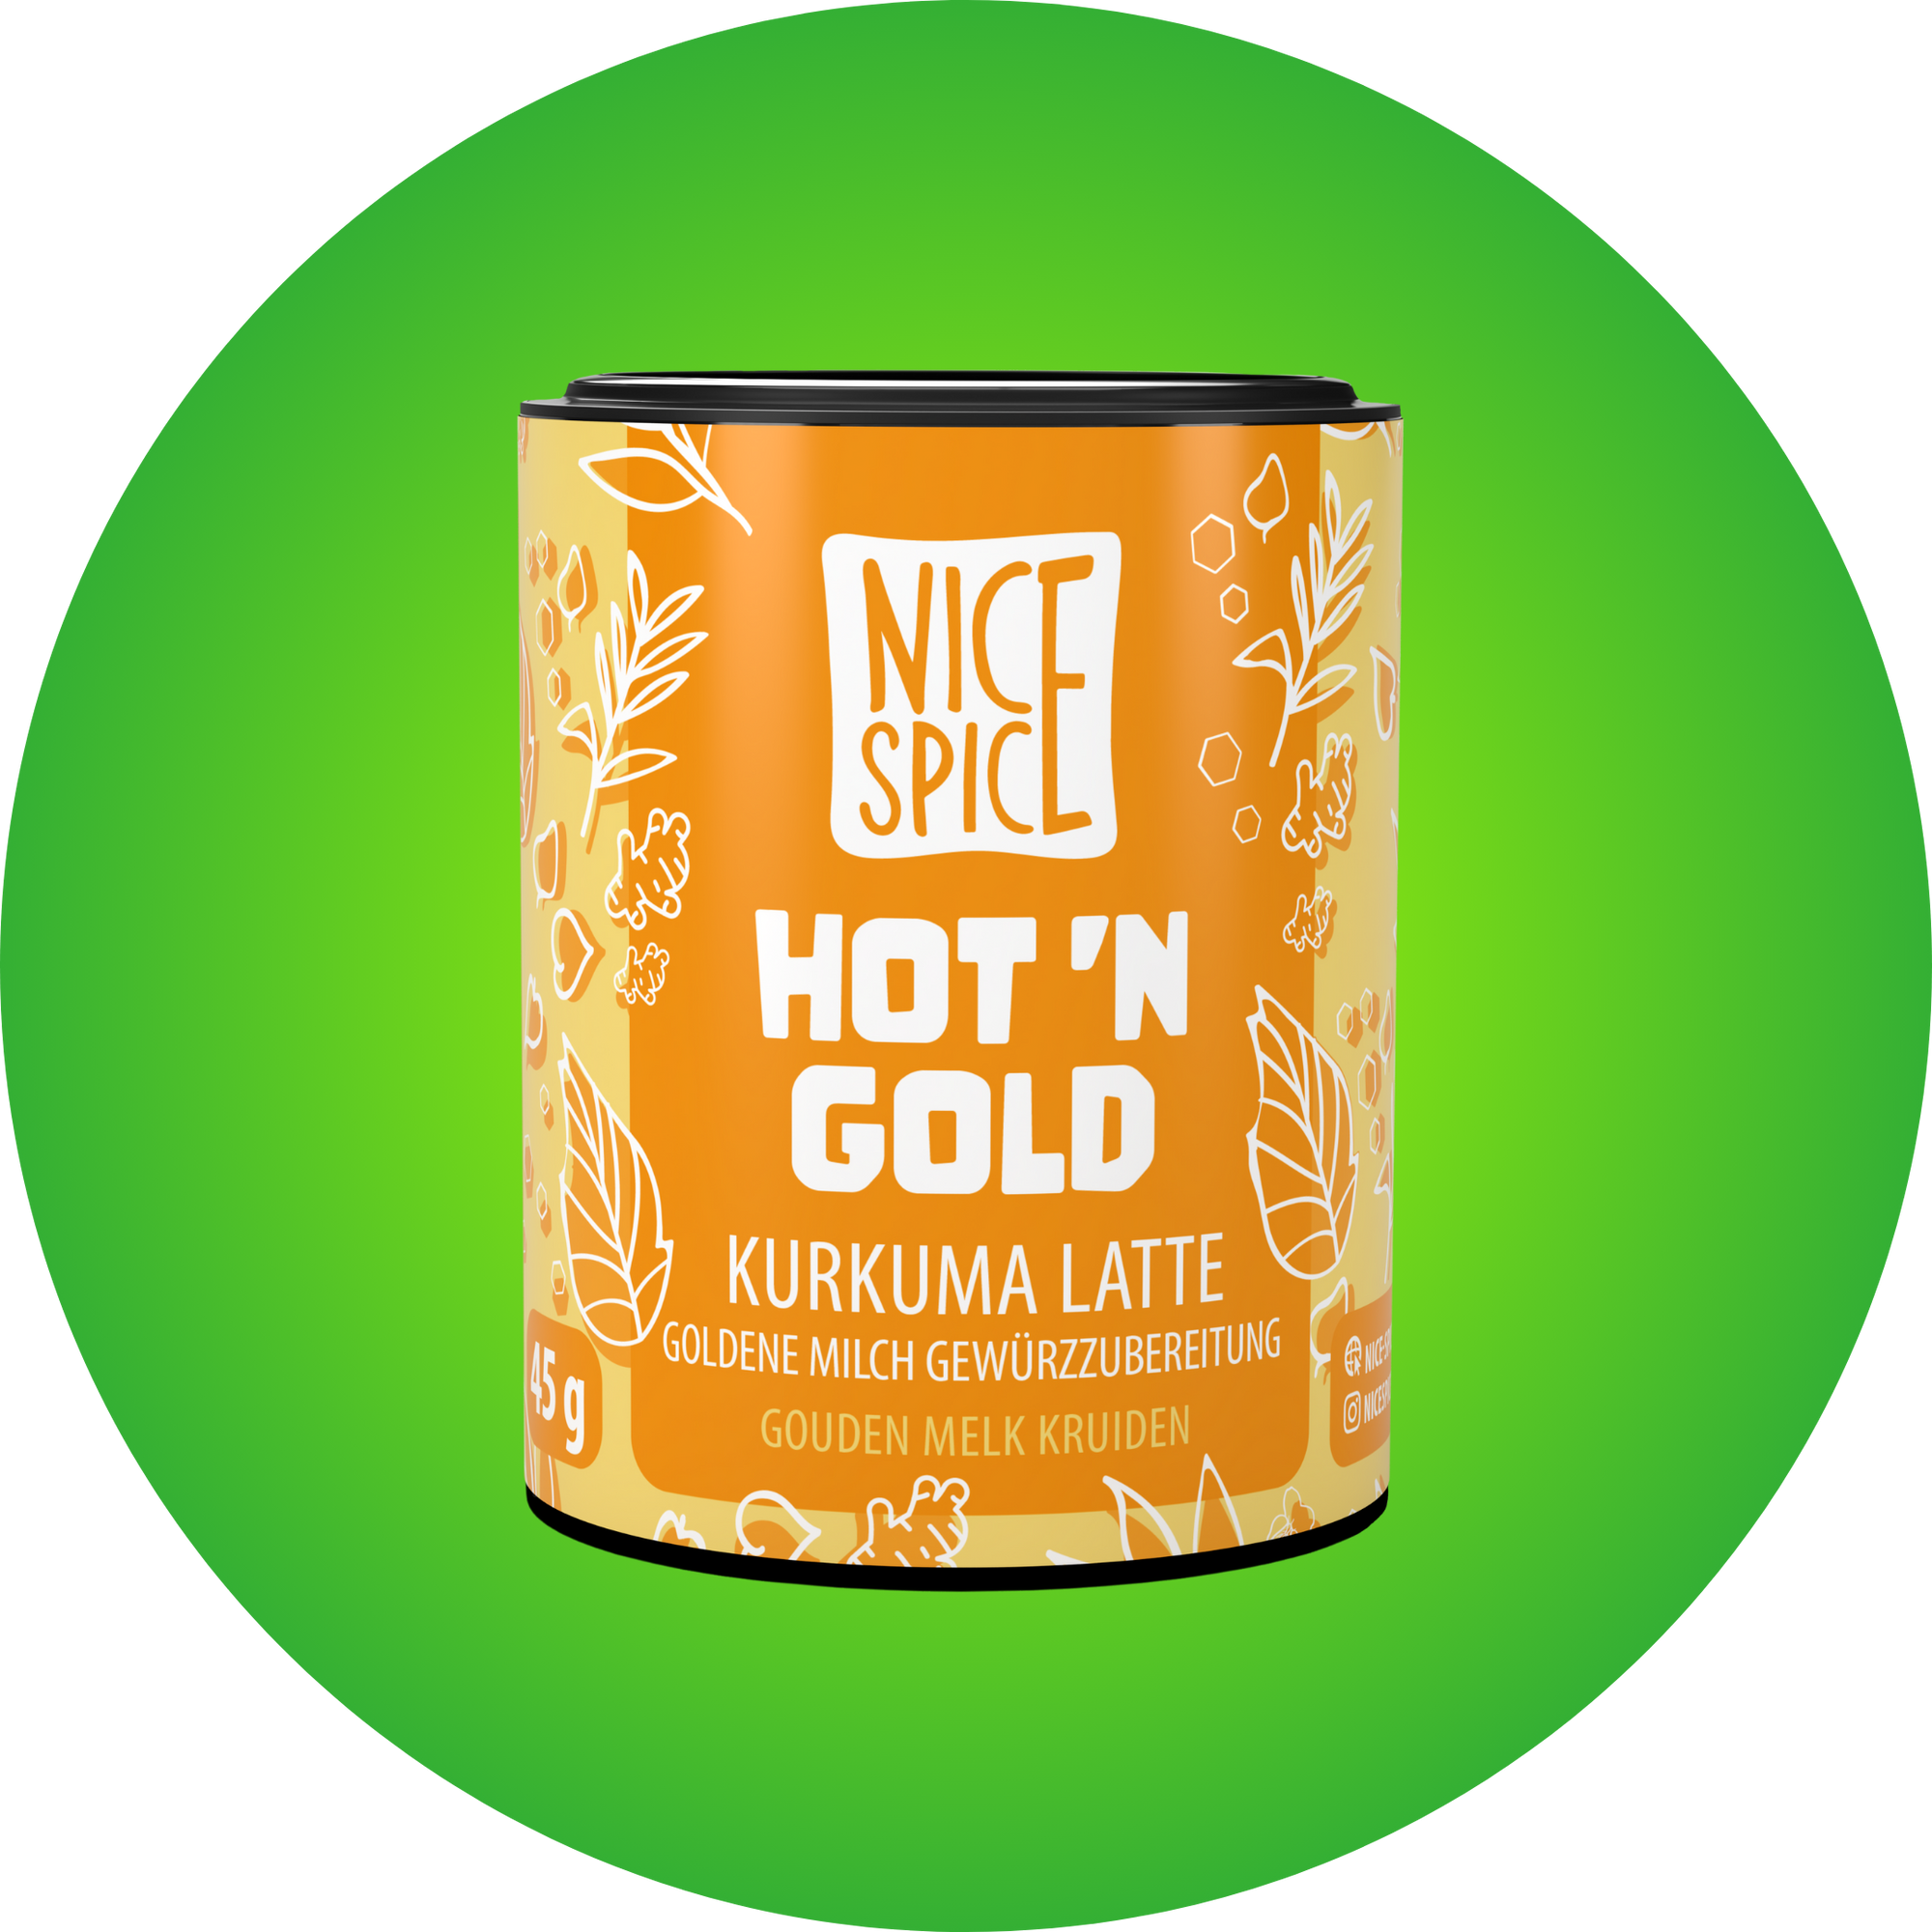 NICE SPICE Hot n Gold Kurkuma Latte Goldene Milch Gewürzzubereitung in gelber zylinderförmiger Dose vor hellgrünem Hintergrund